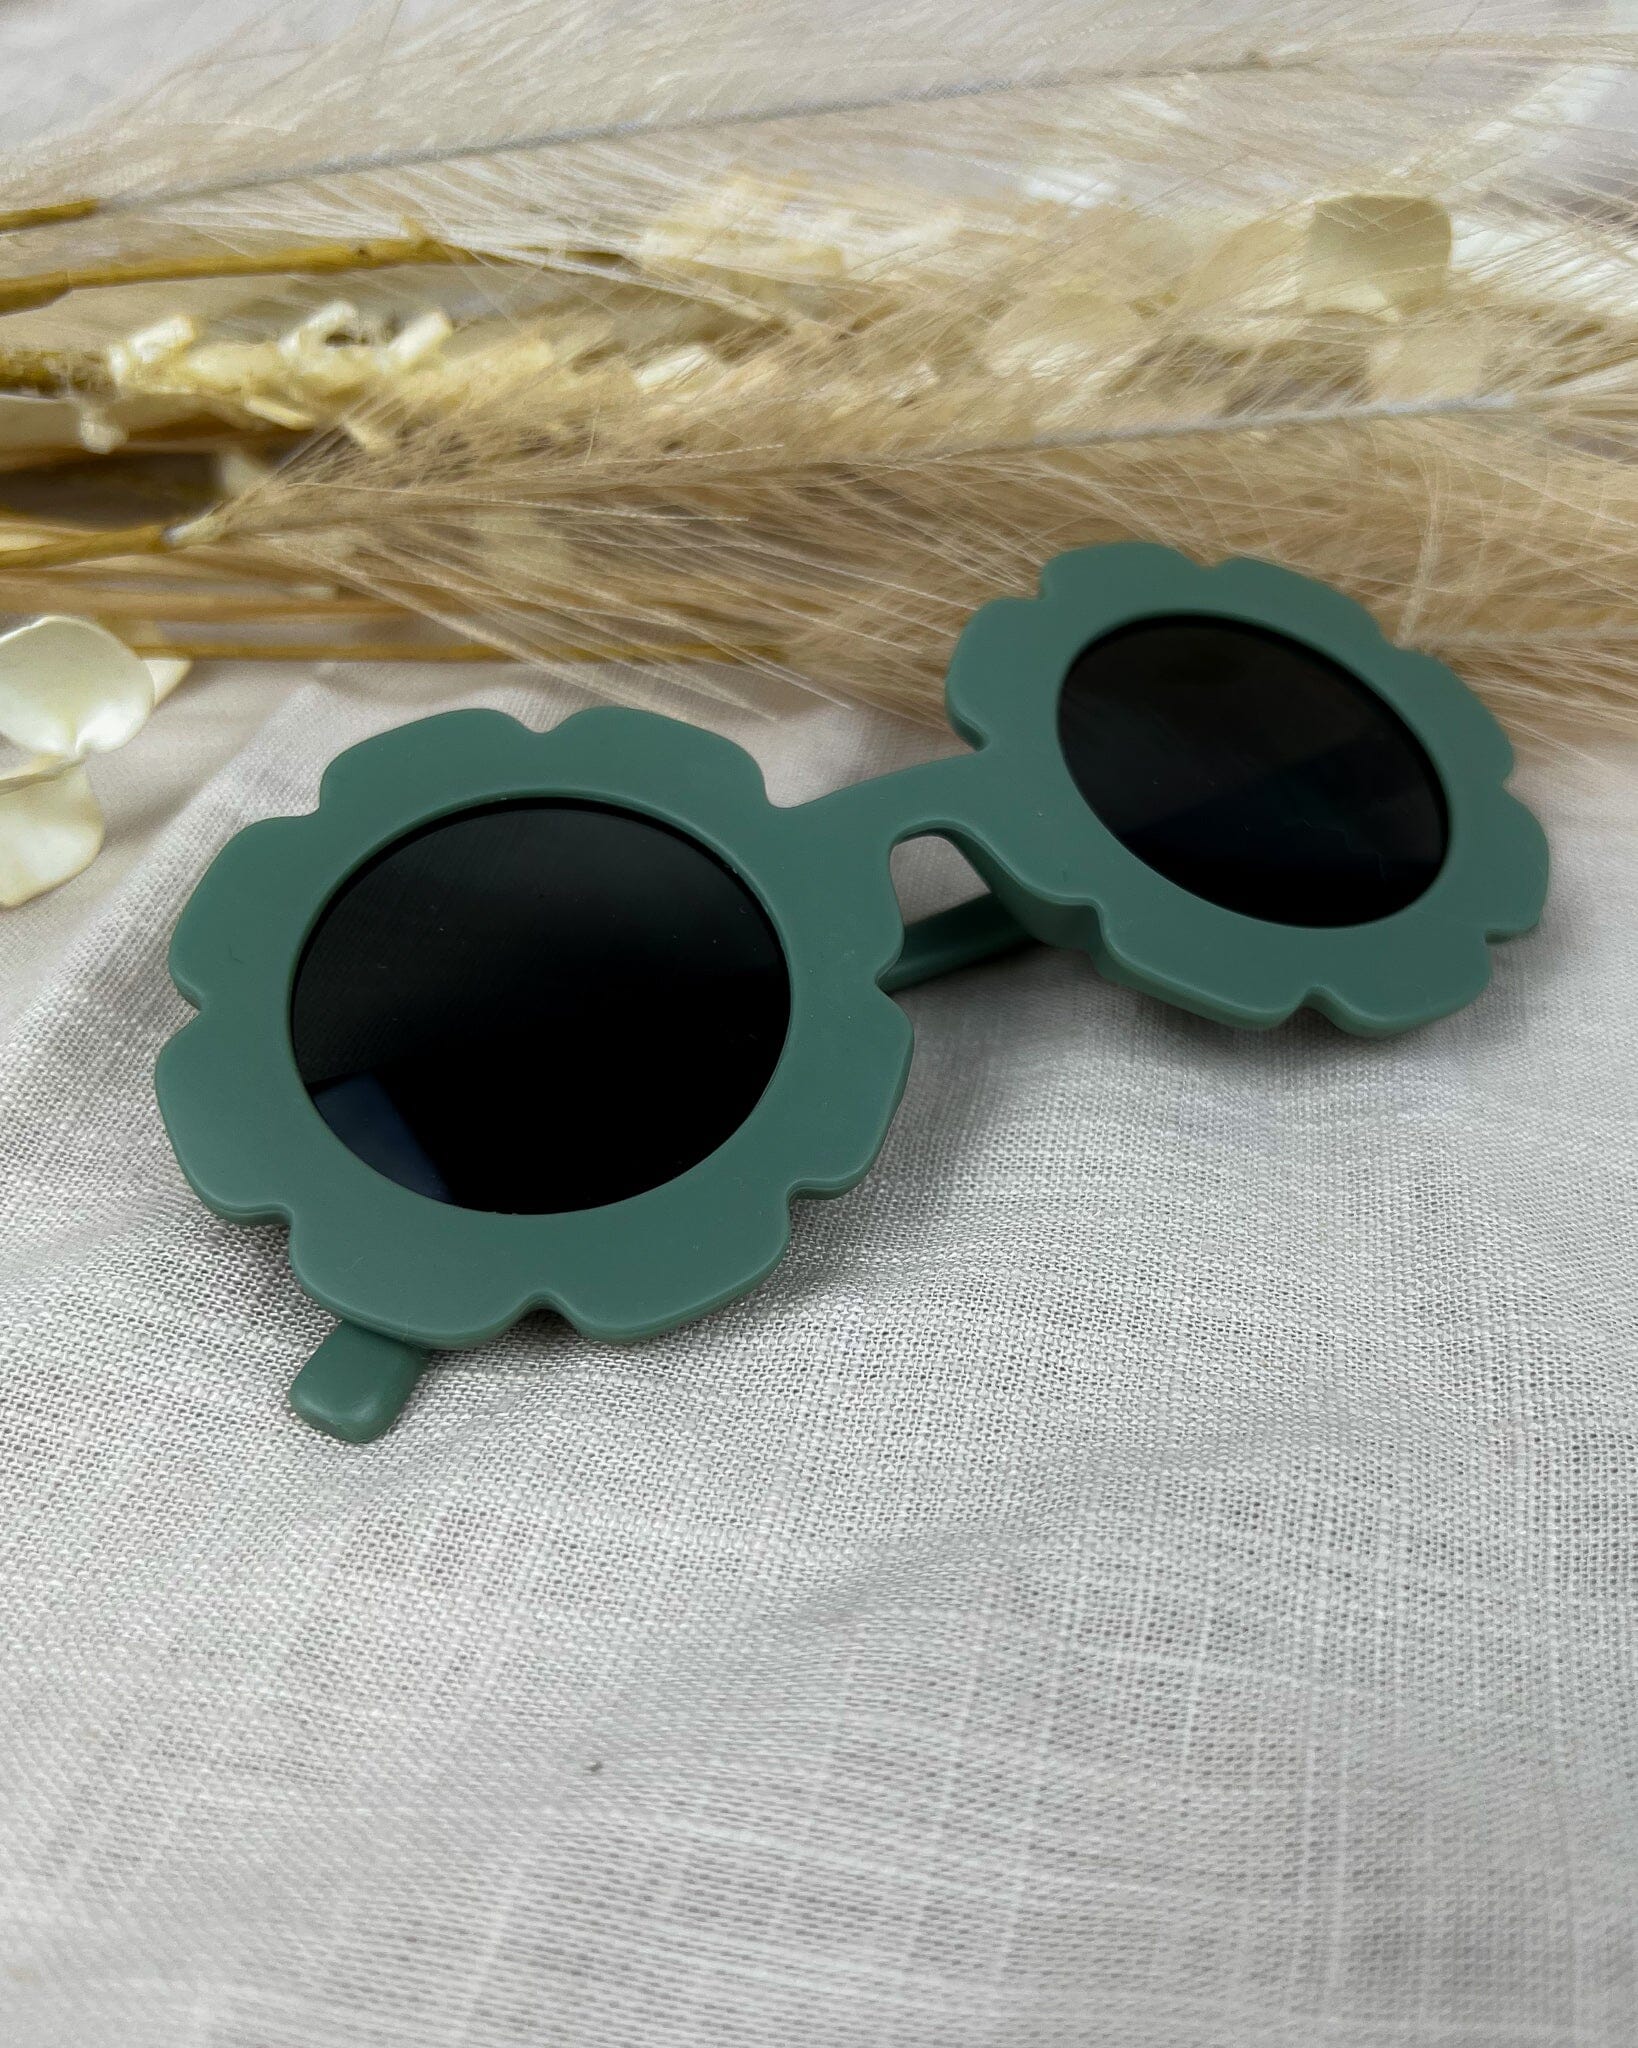 Flower Sunglasses Storkke 